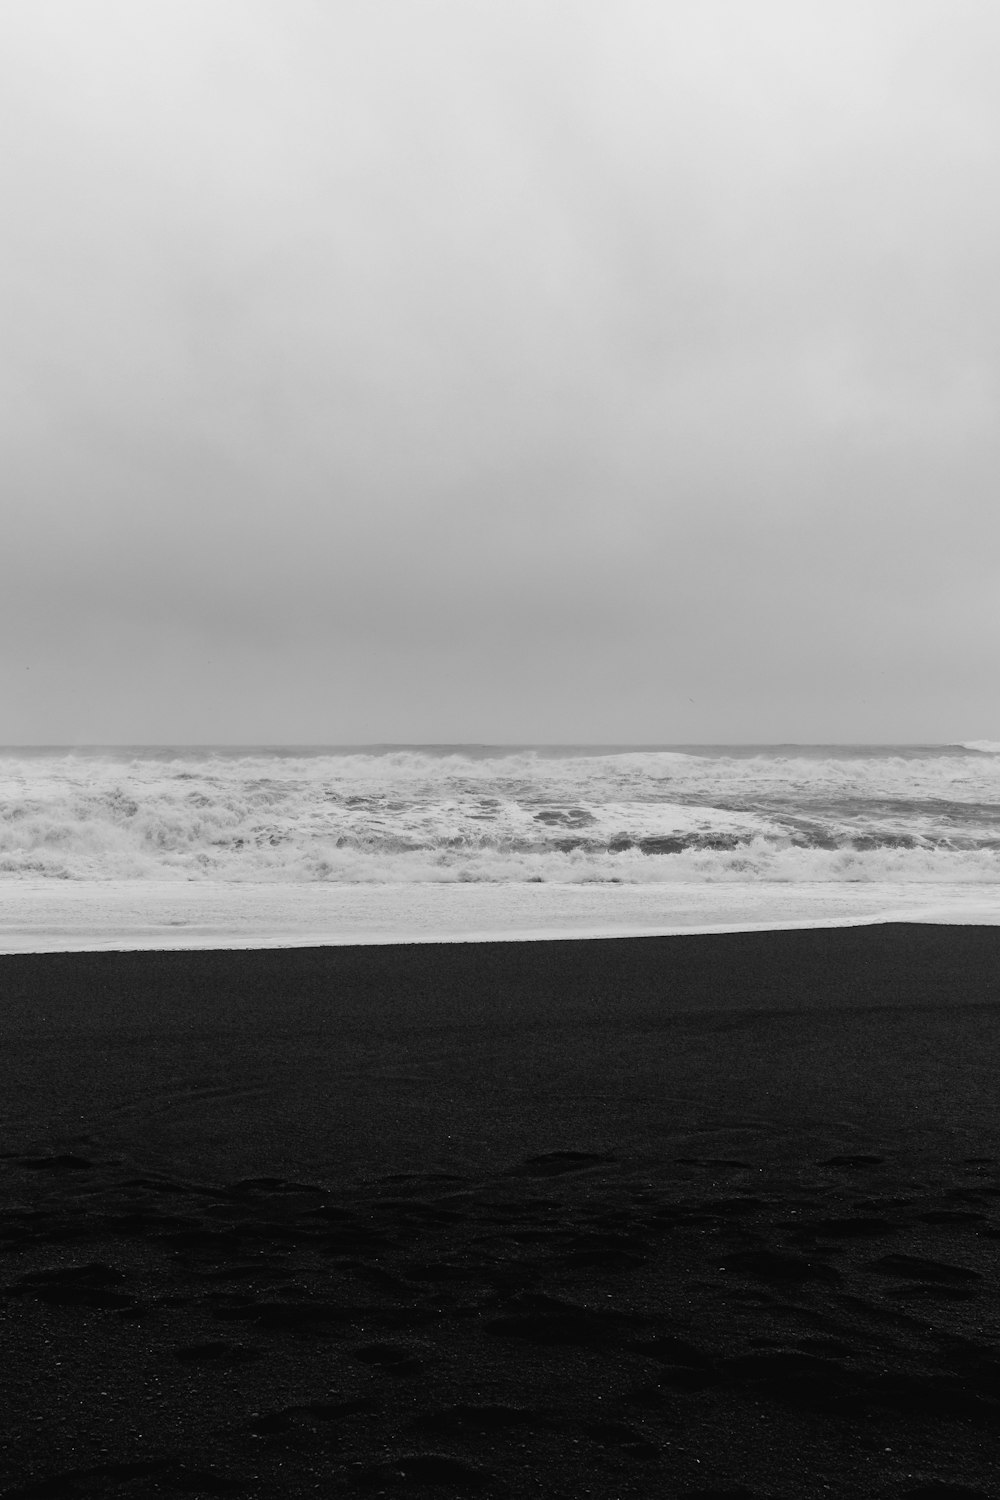 uma foto em preto e branco de uma pessoa carregando uma prancha de surf